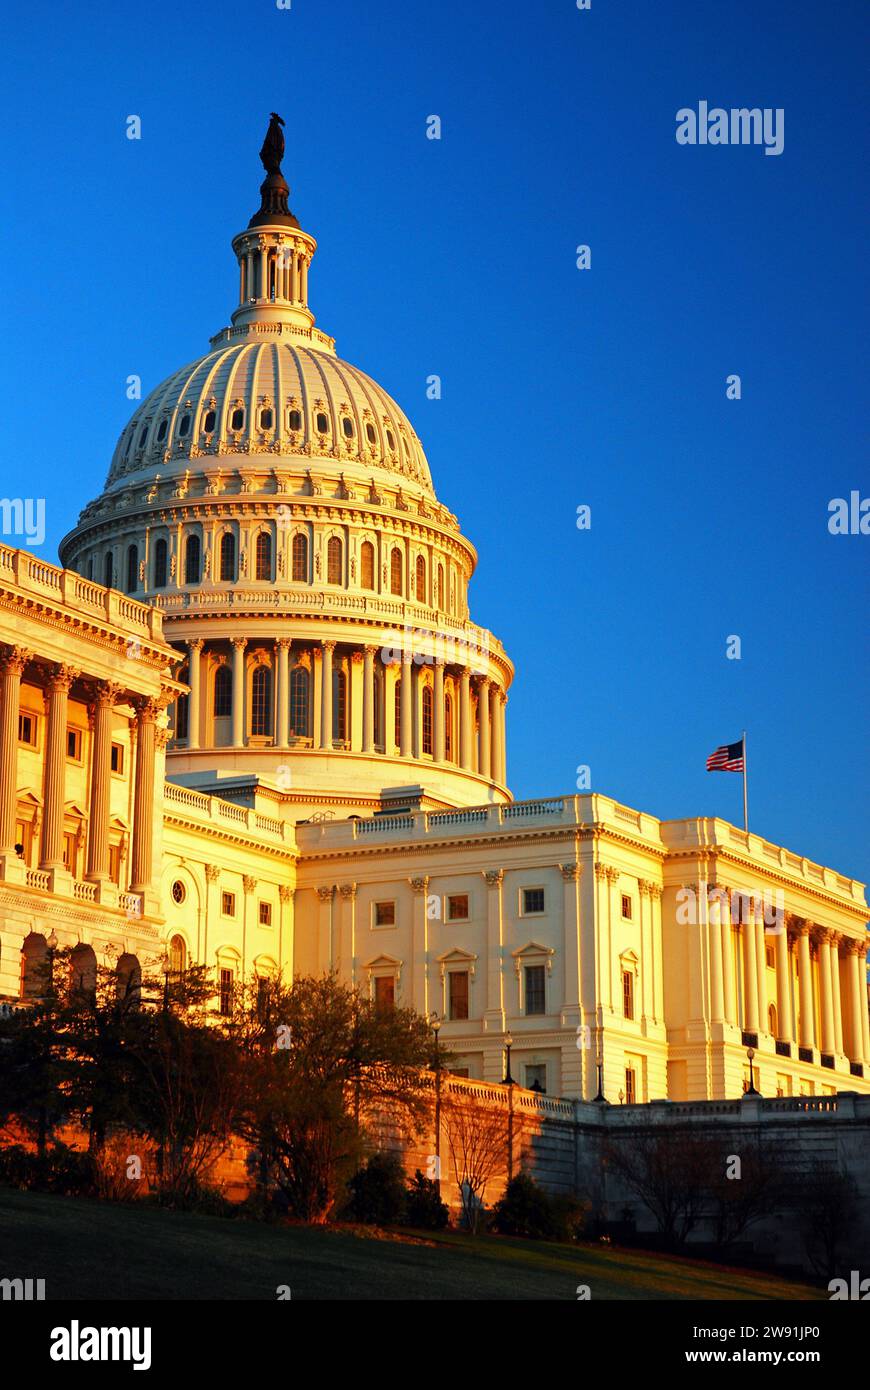 Am späten Nachmittag Licht auf dem Kapitol der USA, Heimat des Kongresses der US-Regierung und der Politik des Landes Stockfoto